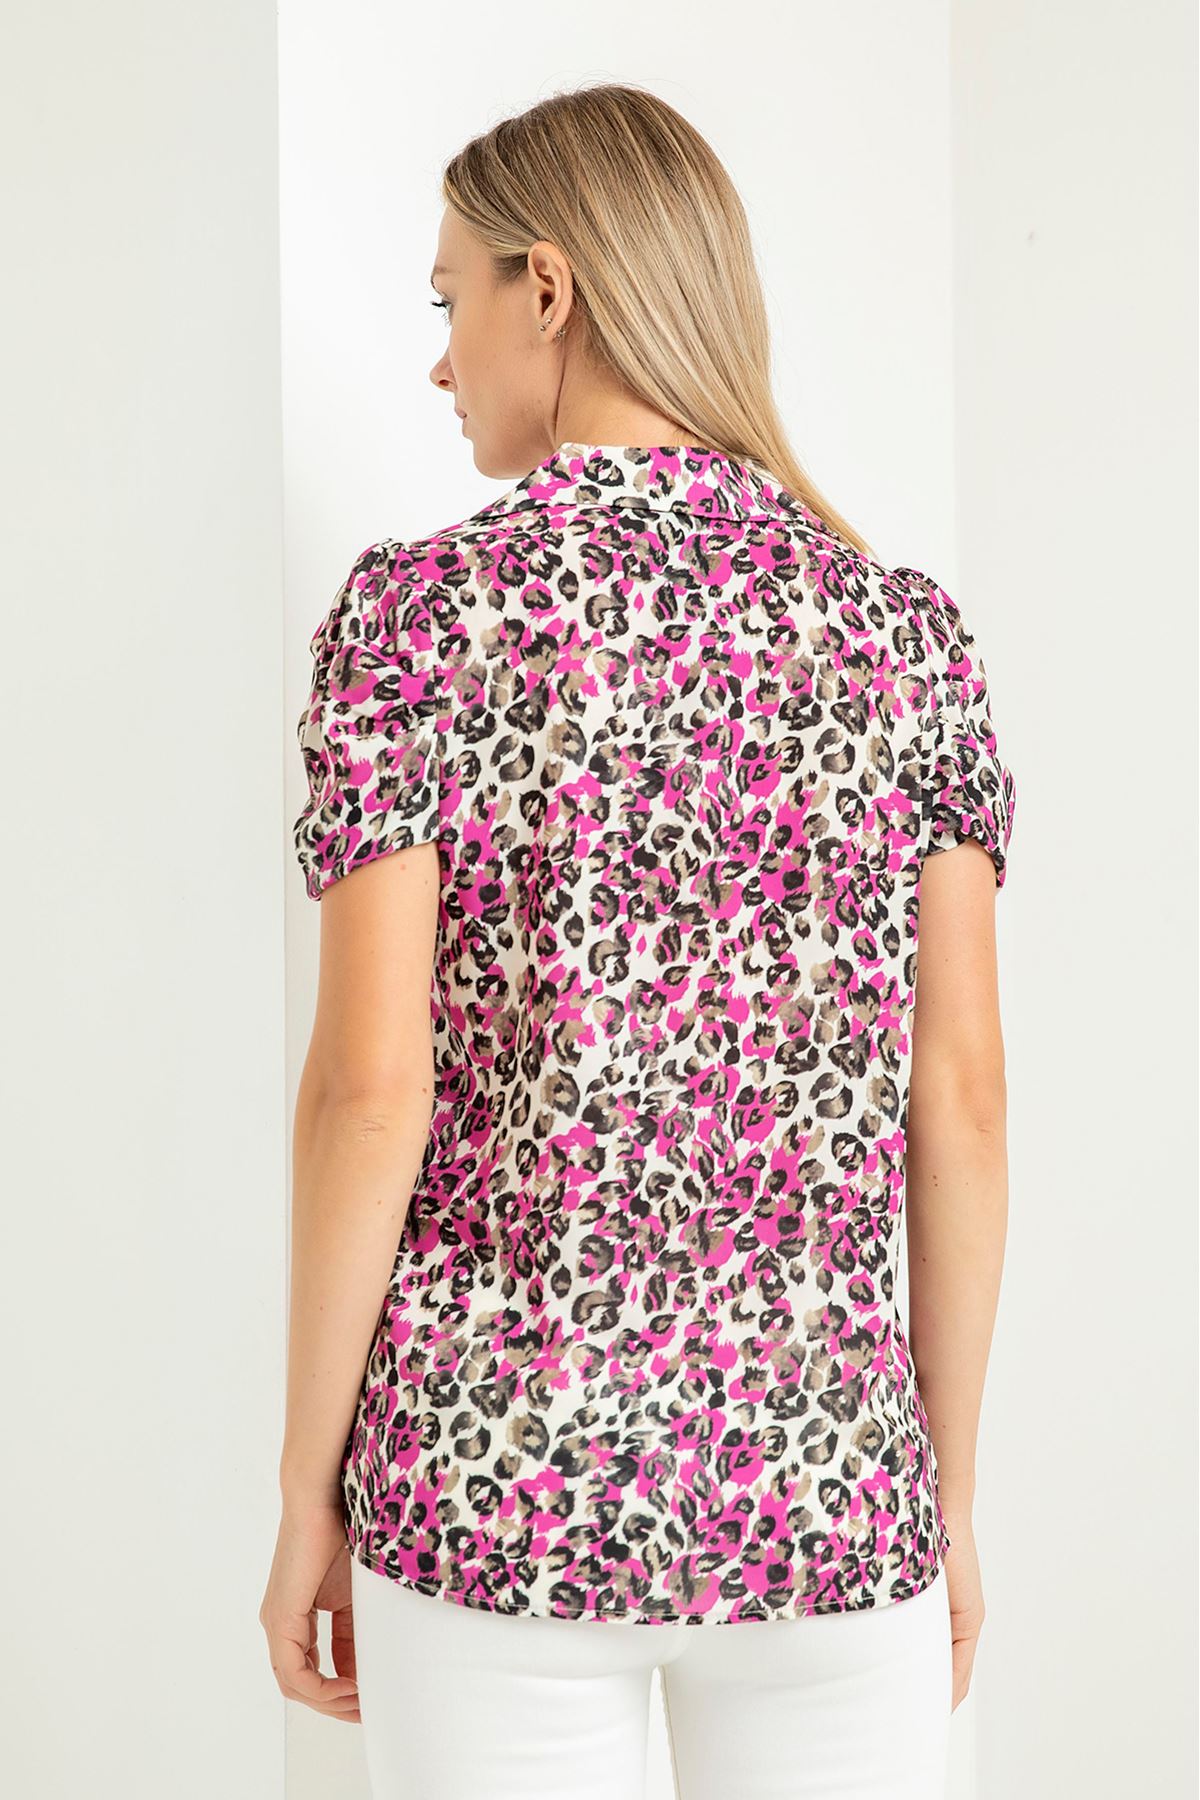 Jesica Fabric Short Sleeve Hip Height Leopard Print Women'S Shirt - Fuchıa